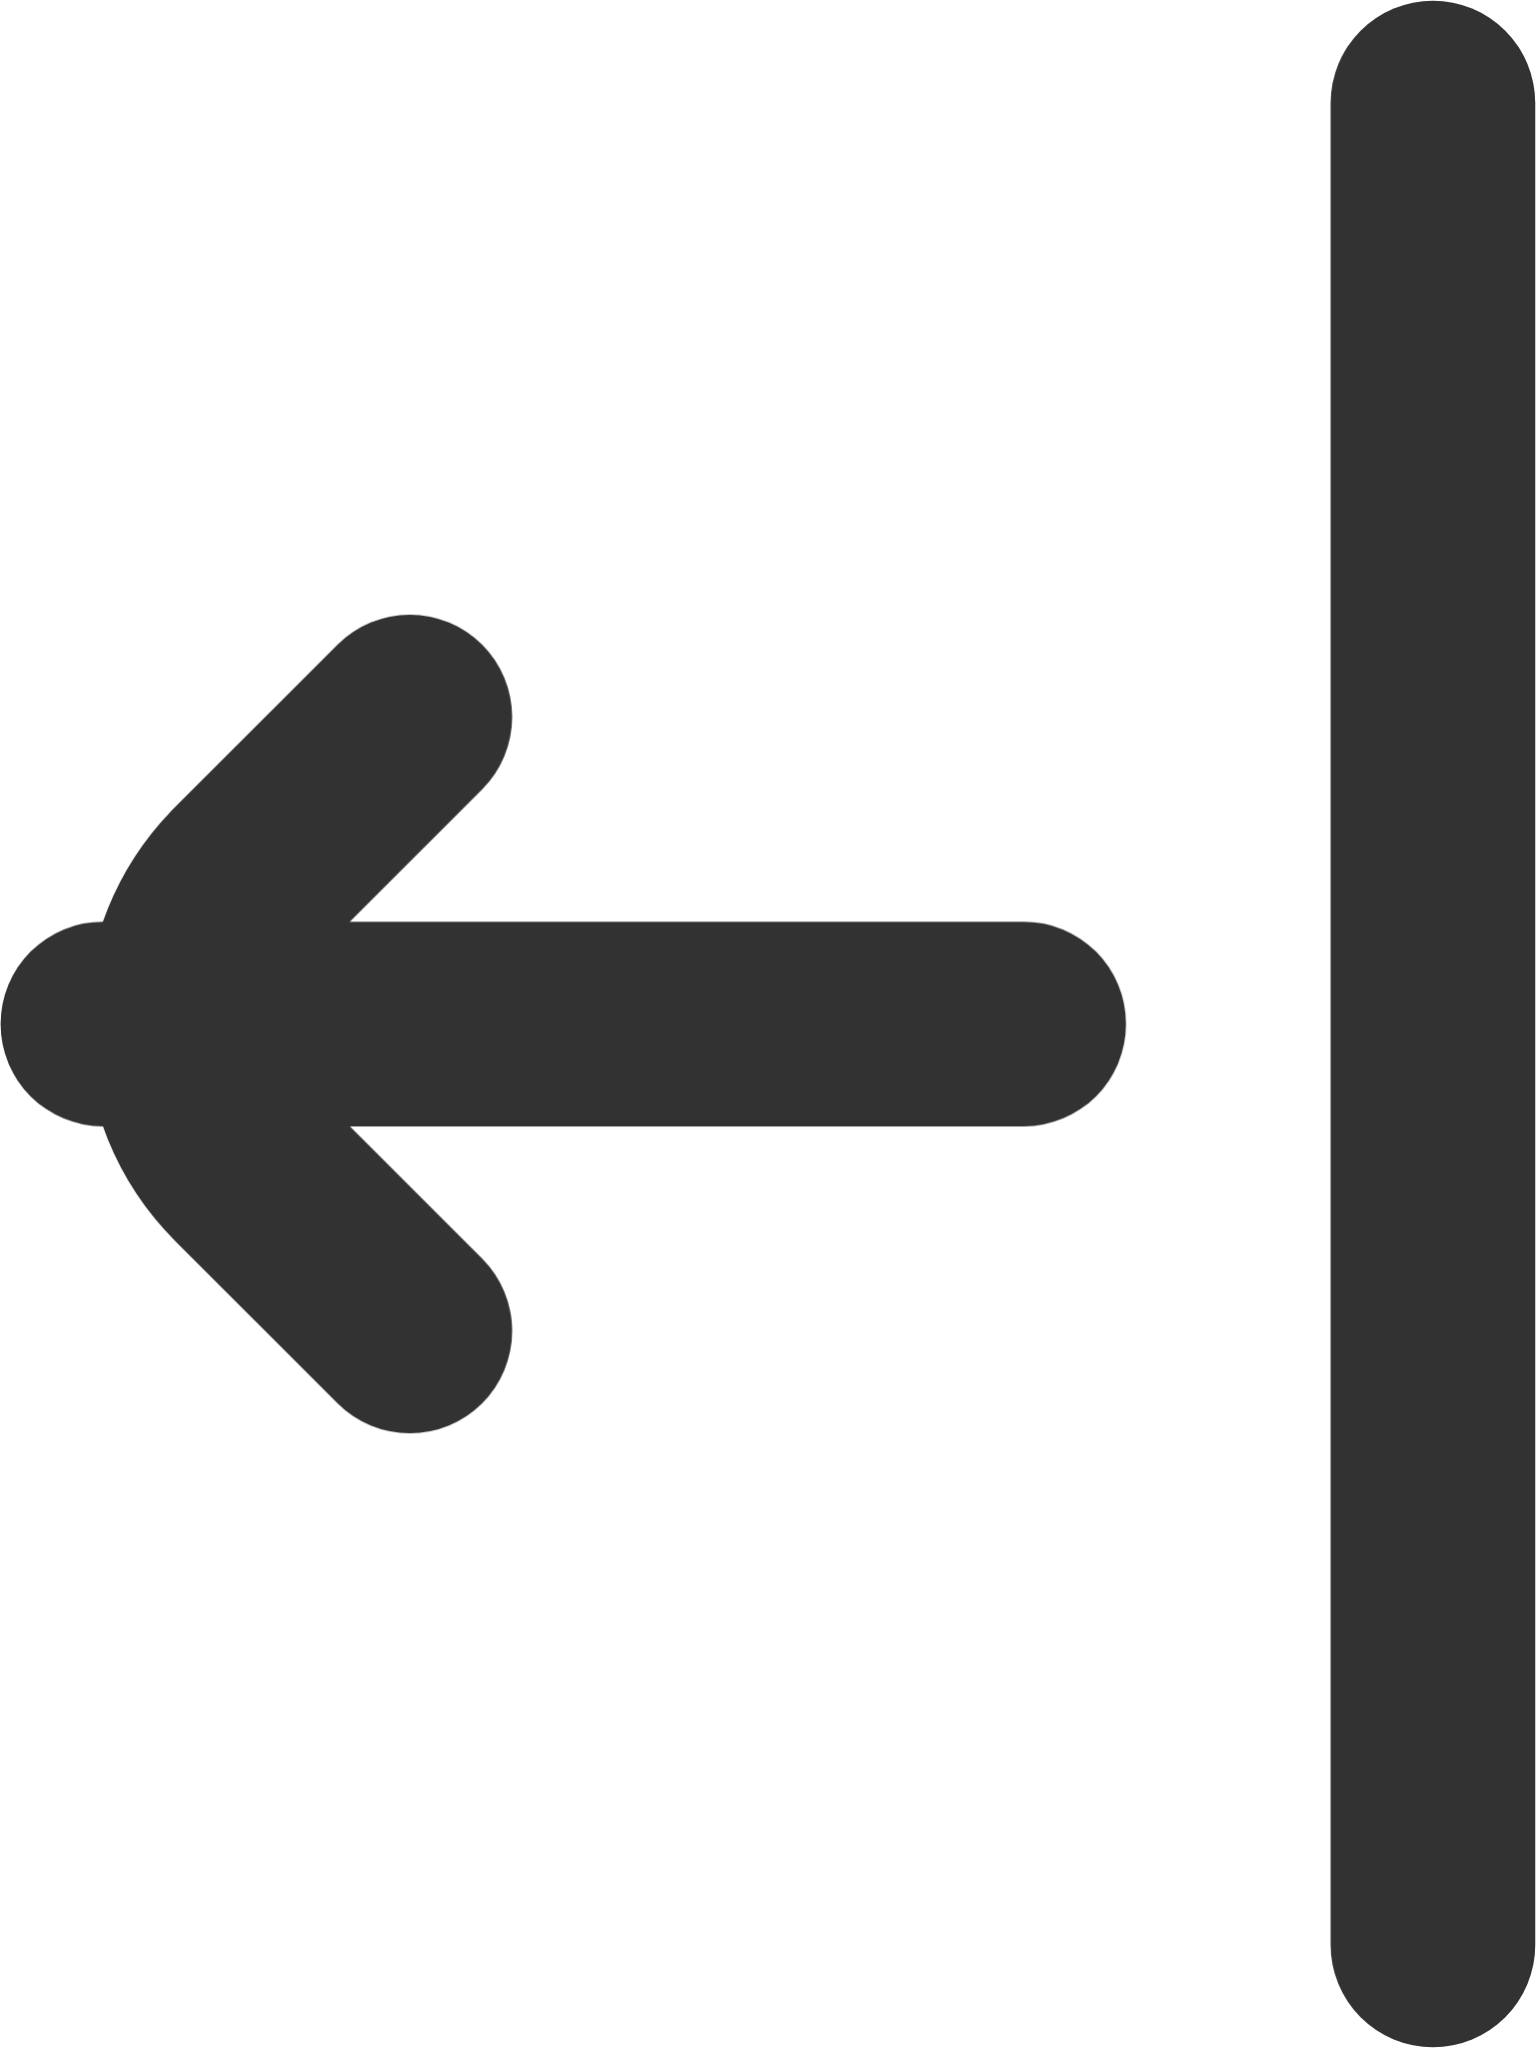 align arrow left icon